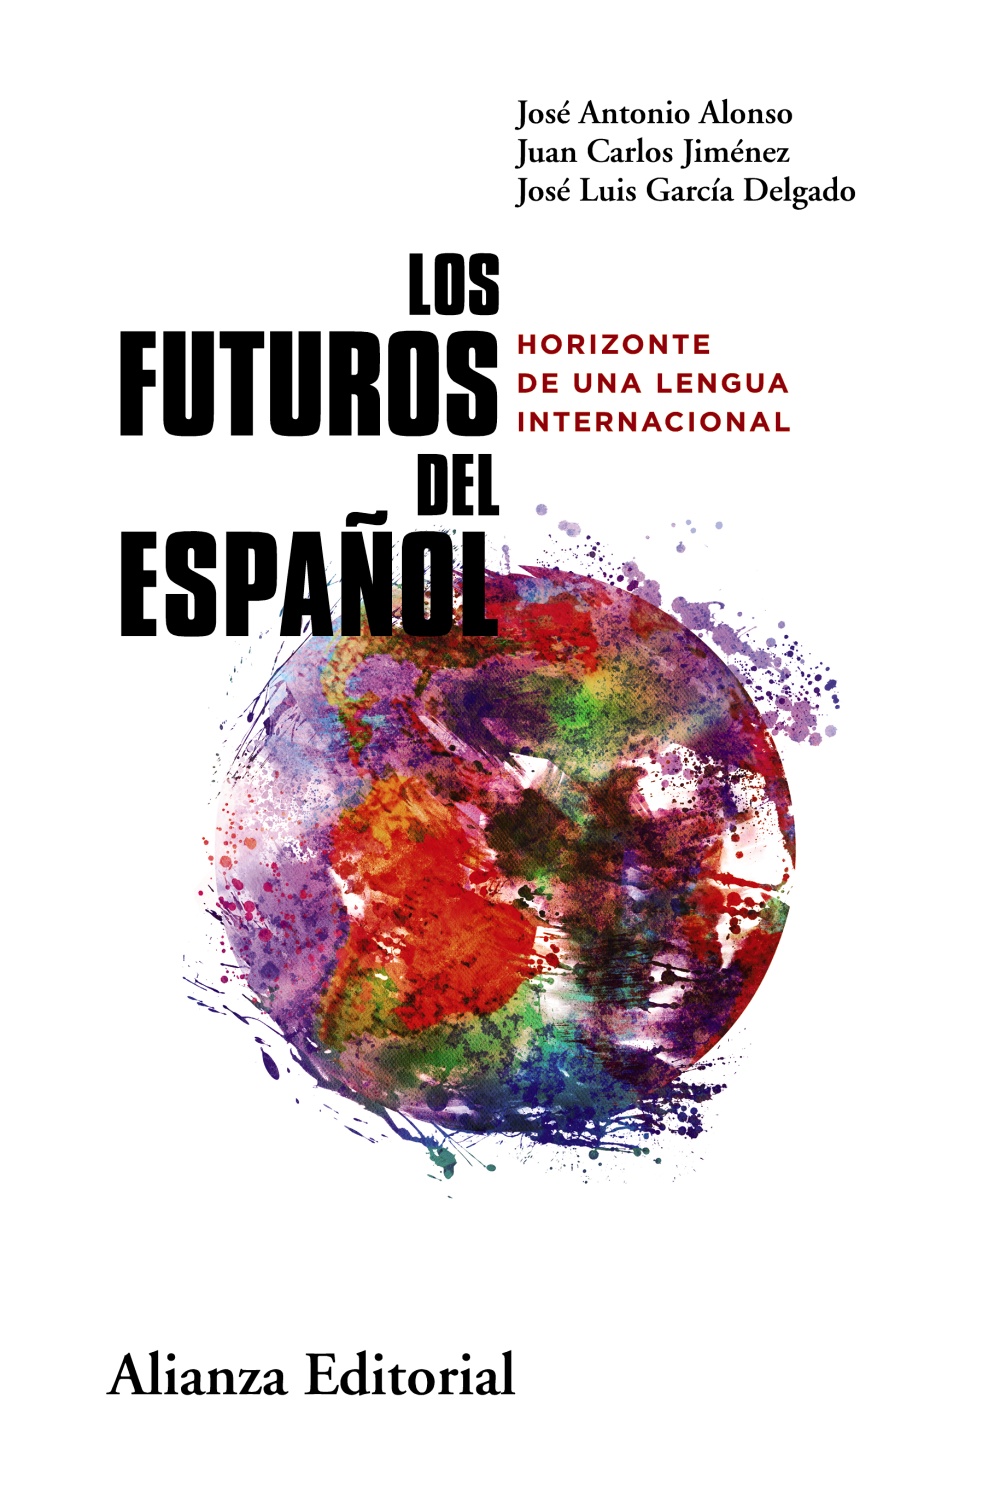 <p><strong>Los futuros del español. Horizontes de una lengua internacional</strong></p>